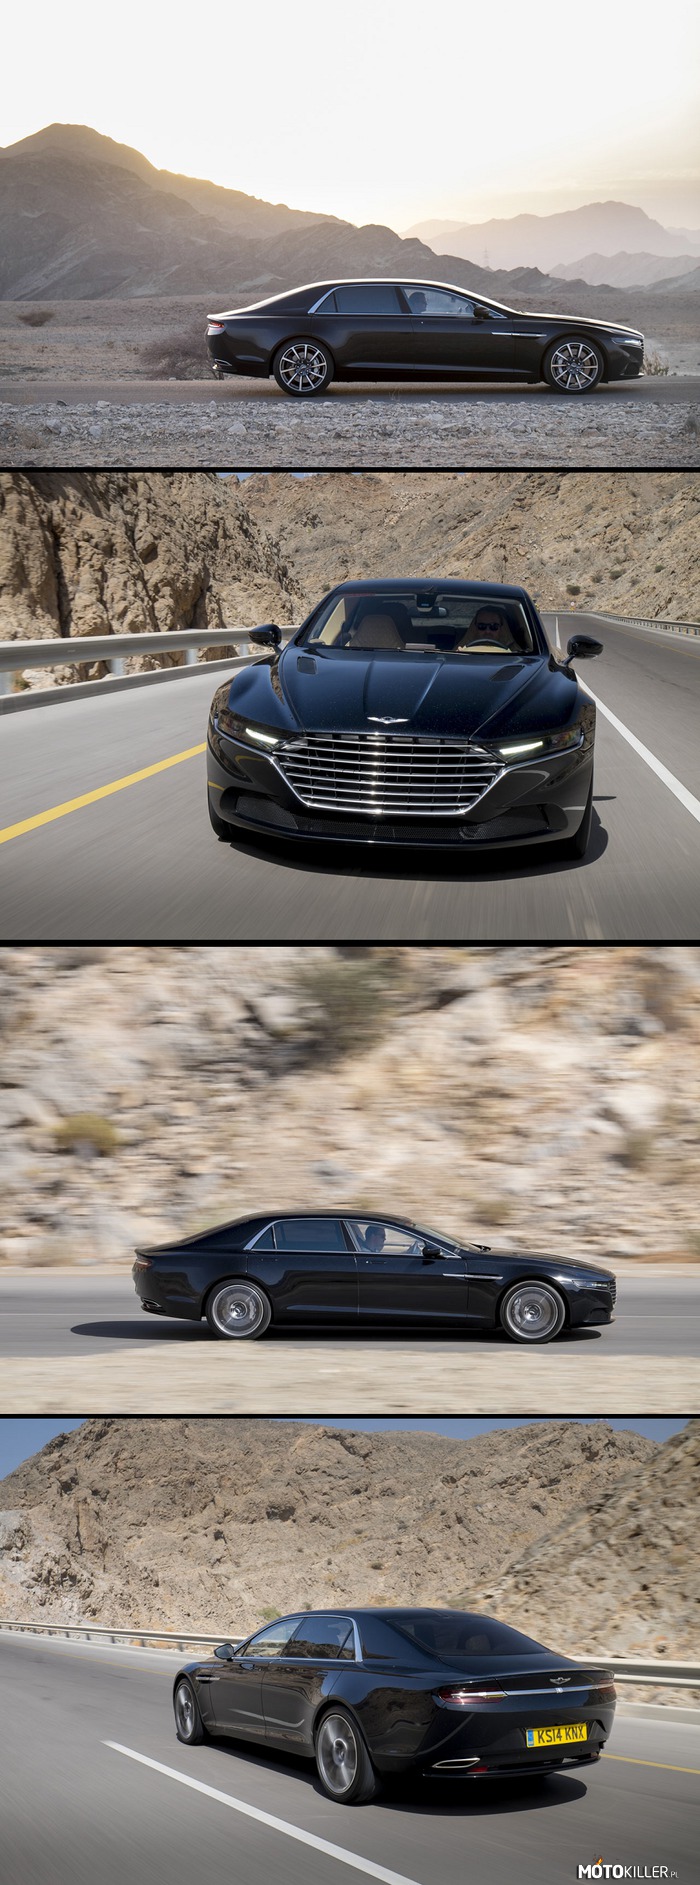 Nowy Aston Martin Lagonda – Następca futurystycznej limuzyny Astona z lat &apos;70 i &apos;80. Moim zdaniem mistrzowski popis stylistów Astona. Świetny, agresywny i elegancki jednocześnie design, który w końcu wnosi powiew świeżości do gamy AM. Wg. mnie wygląda o wiele lepiej od modelu Rapide, który na dobrą sprawę jest tylko rozciągniętym DB9. 